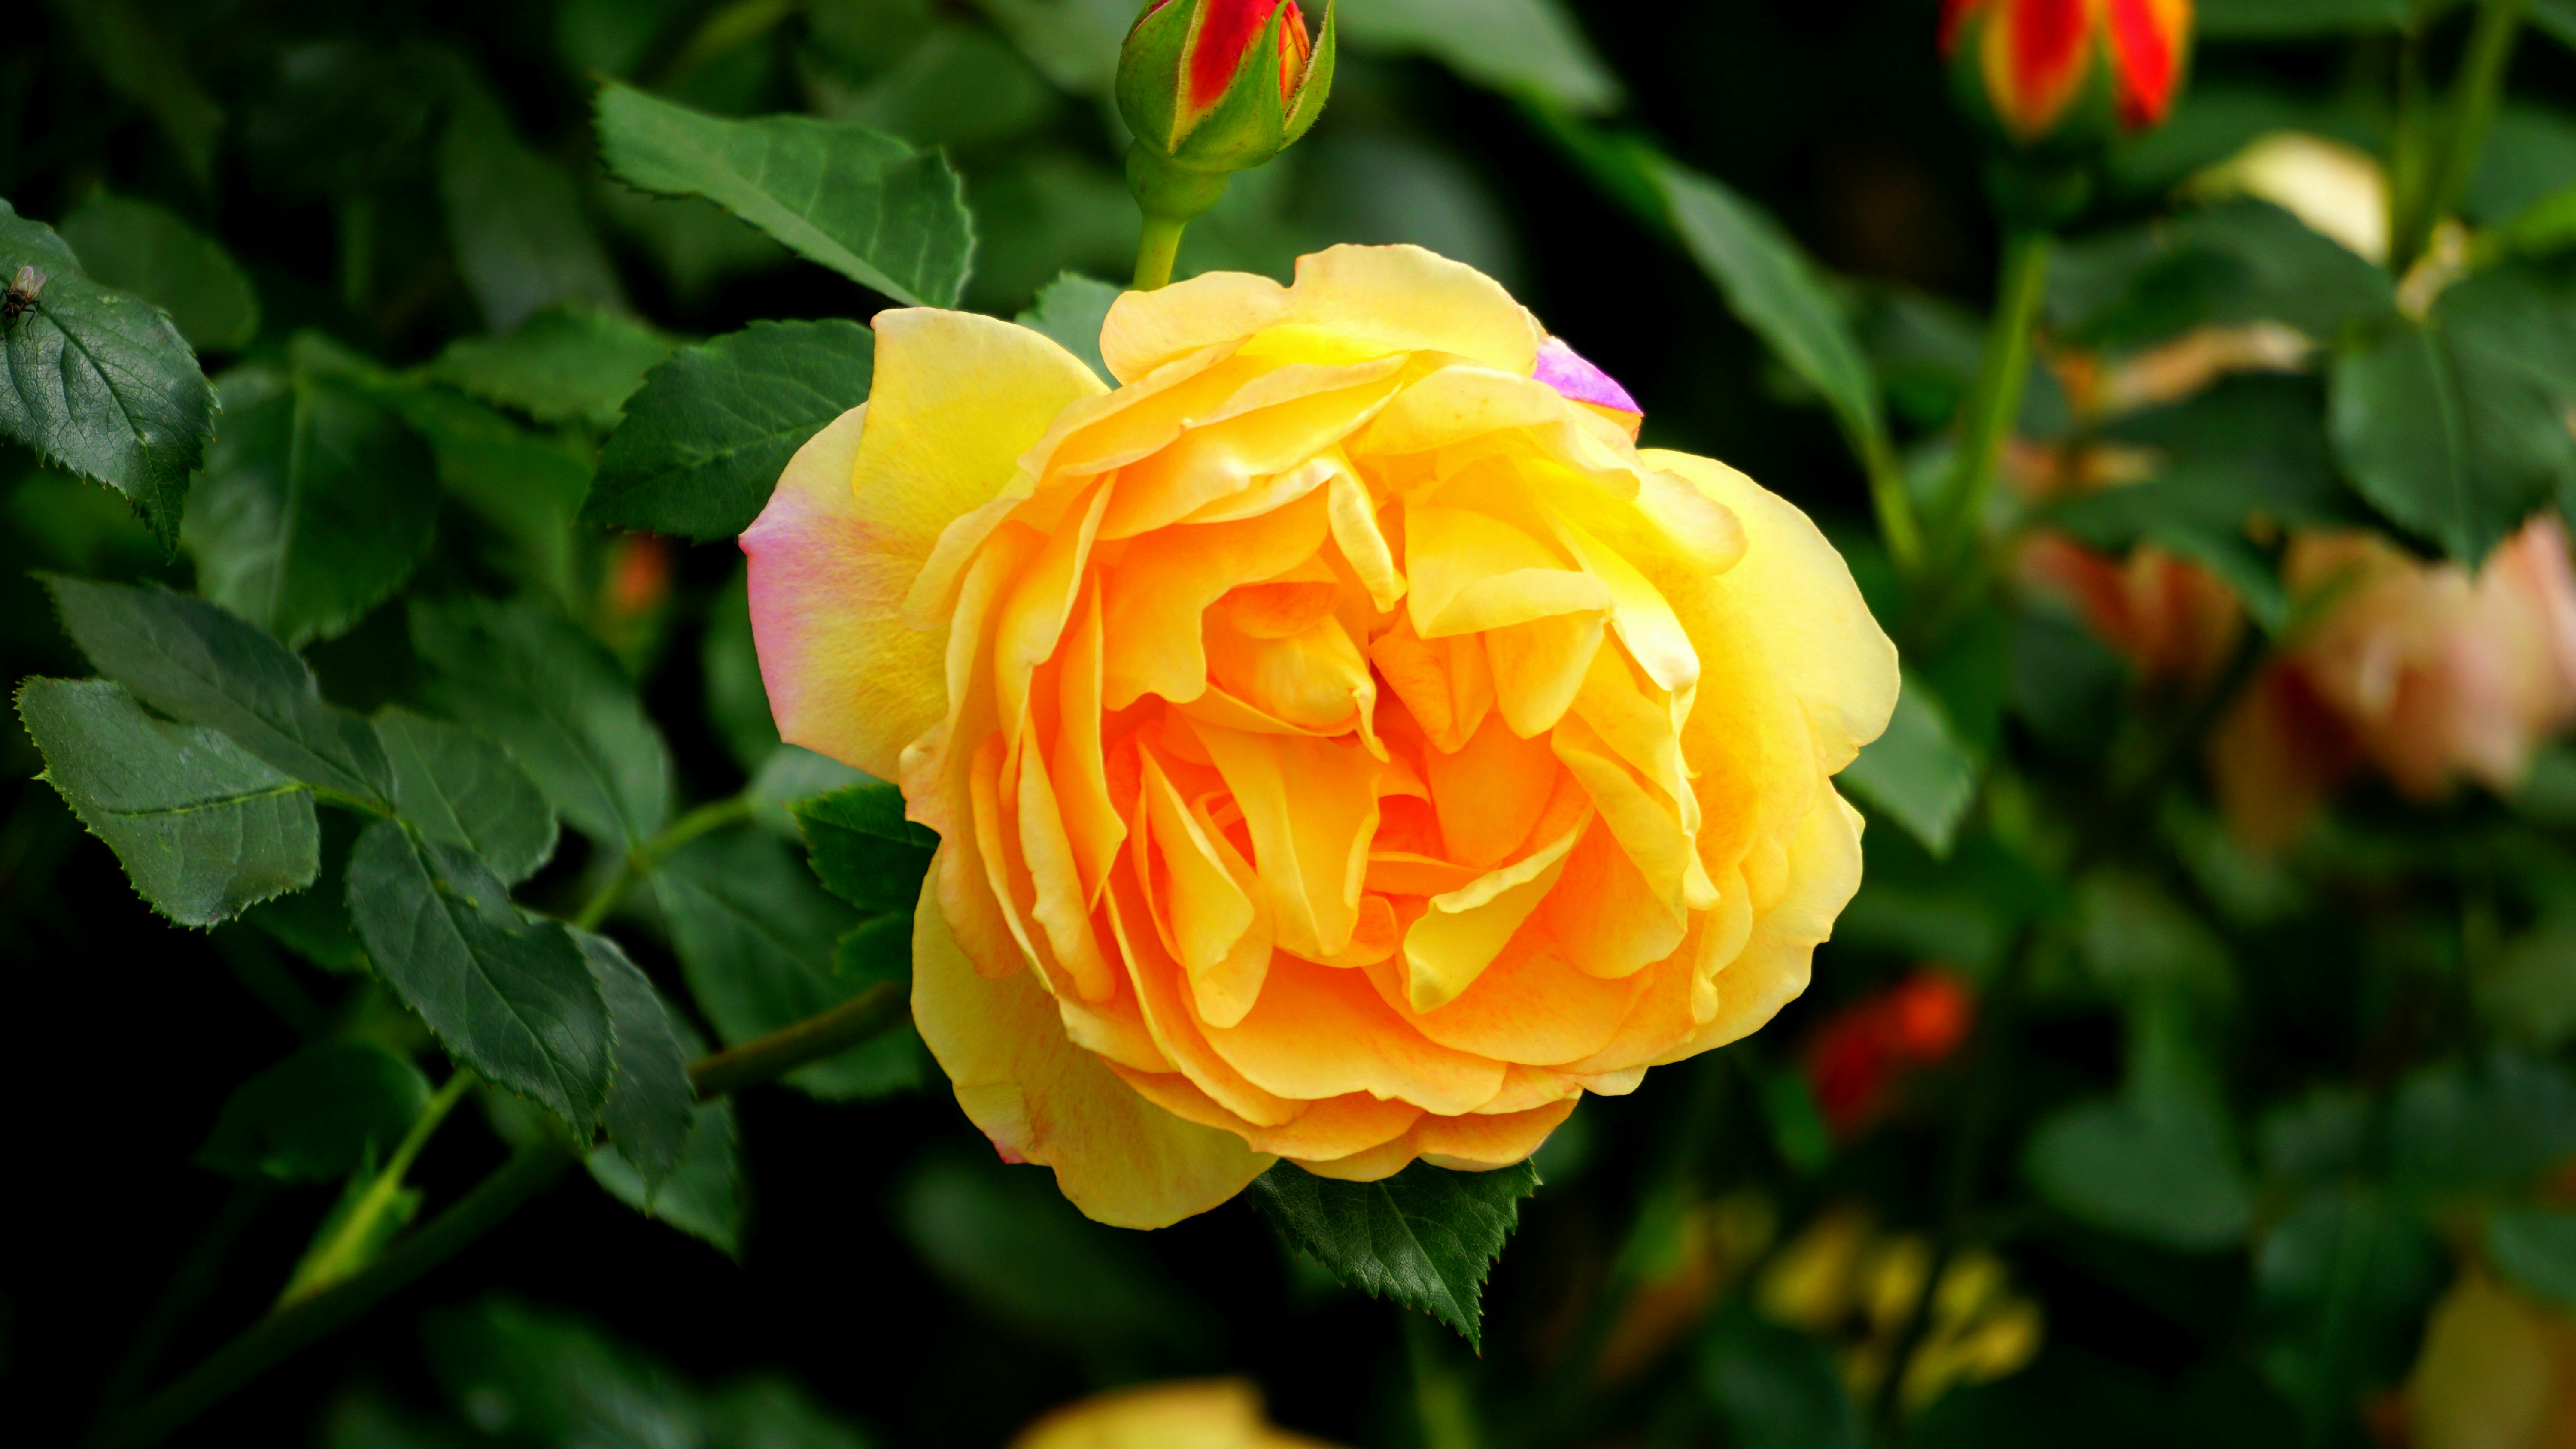 Orange Rose Flower in Bloom during Daytime \u00b7 Free Stock Photo